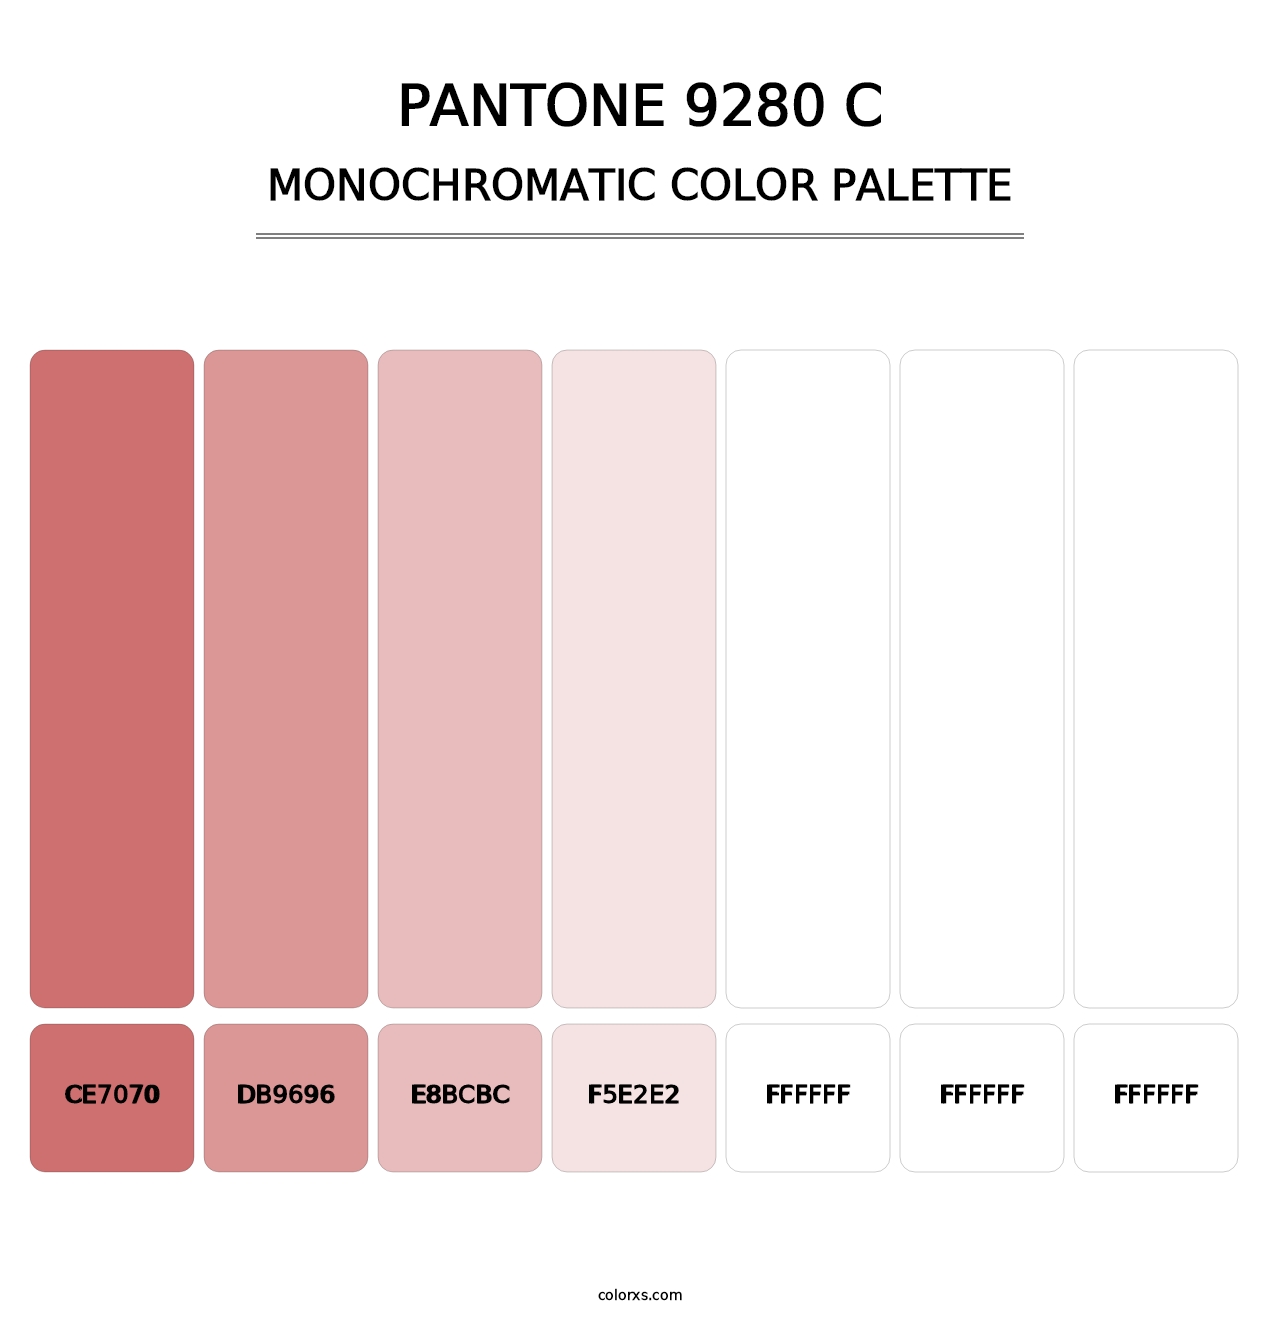 PANTONE 9280 C - Monochromatic Color Palette